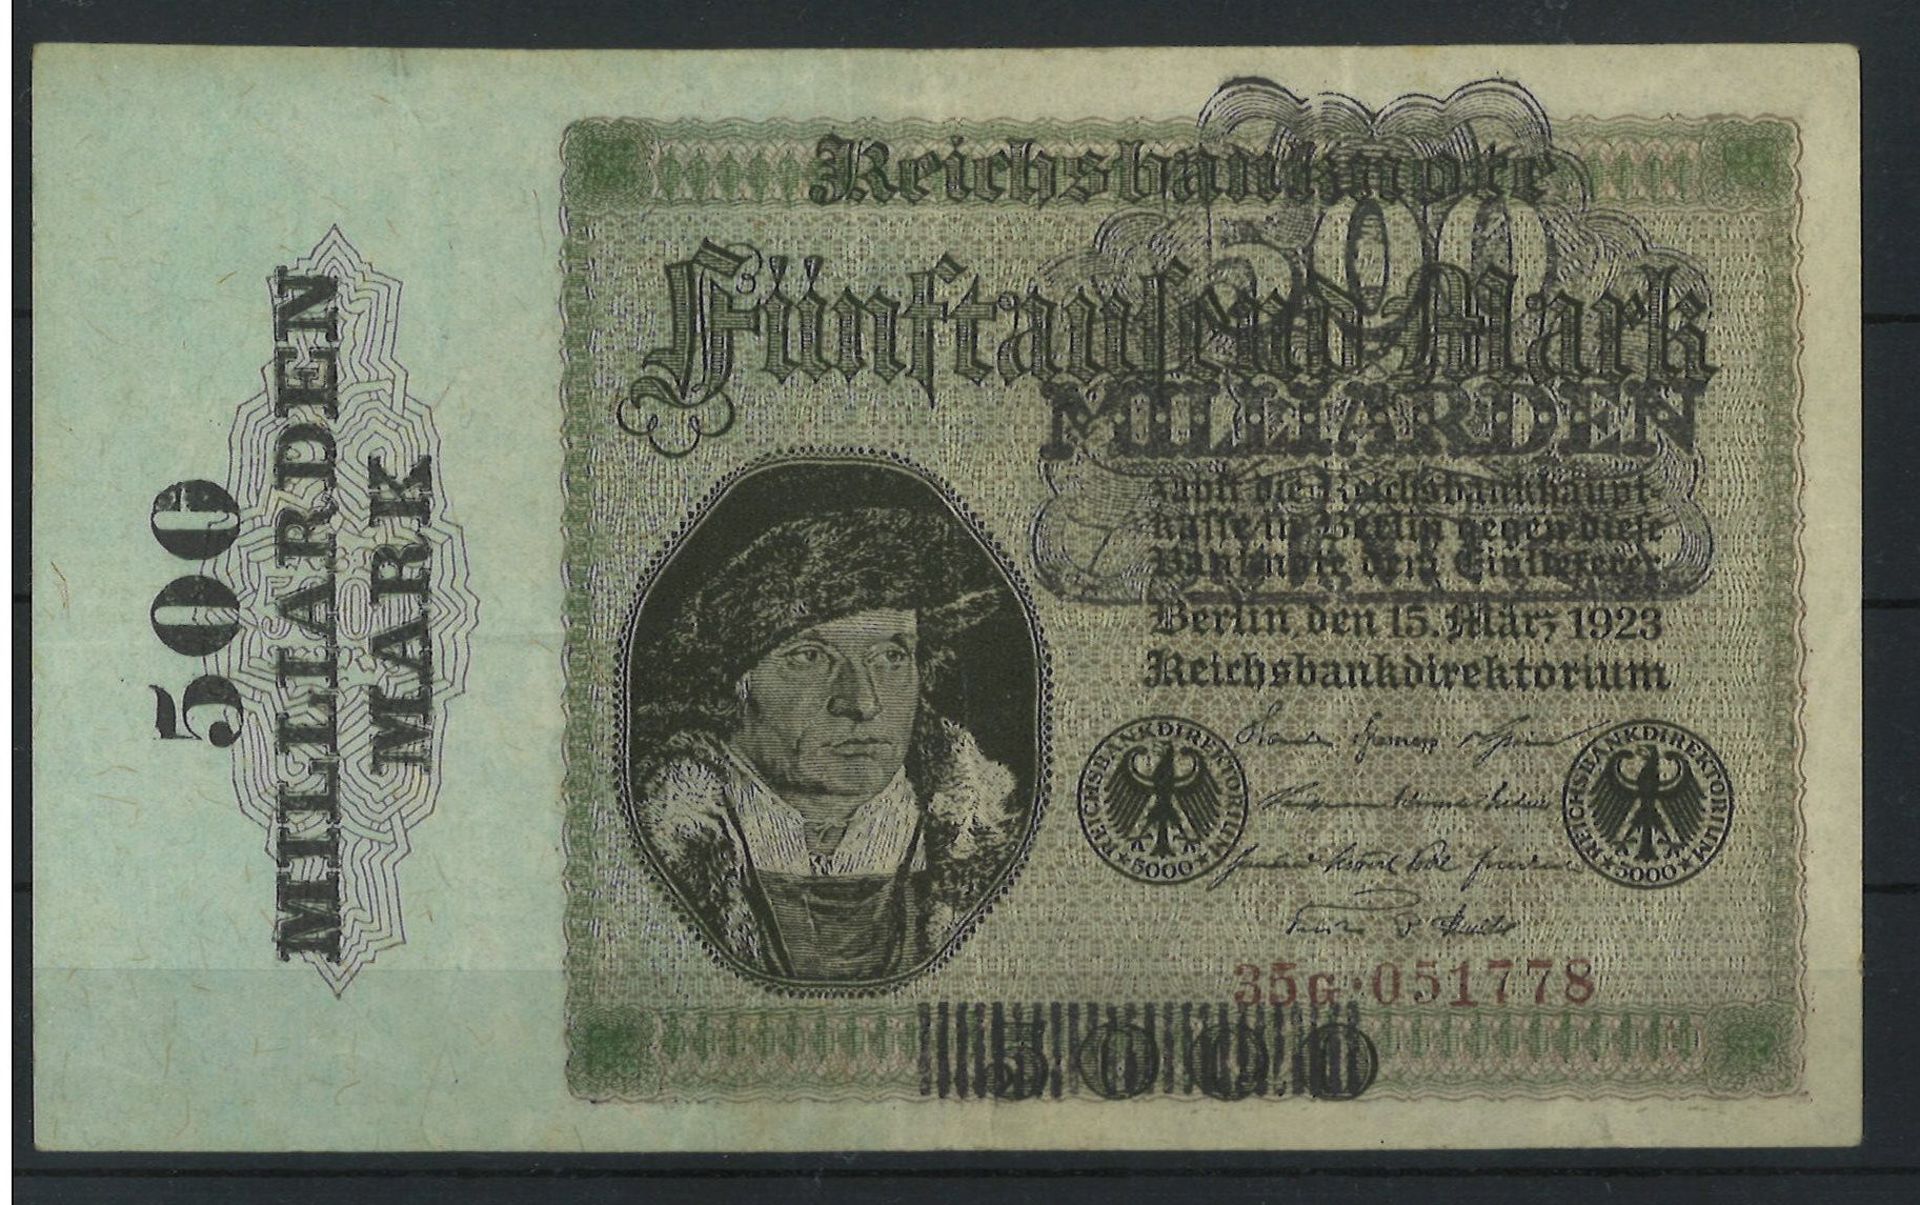 Reichsbanknote Inflation 15.3.1923, "500 Milliaren Mark", Rosenberg 121 b, Erhaltung: gut.